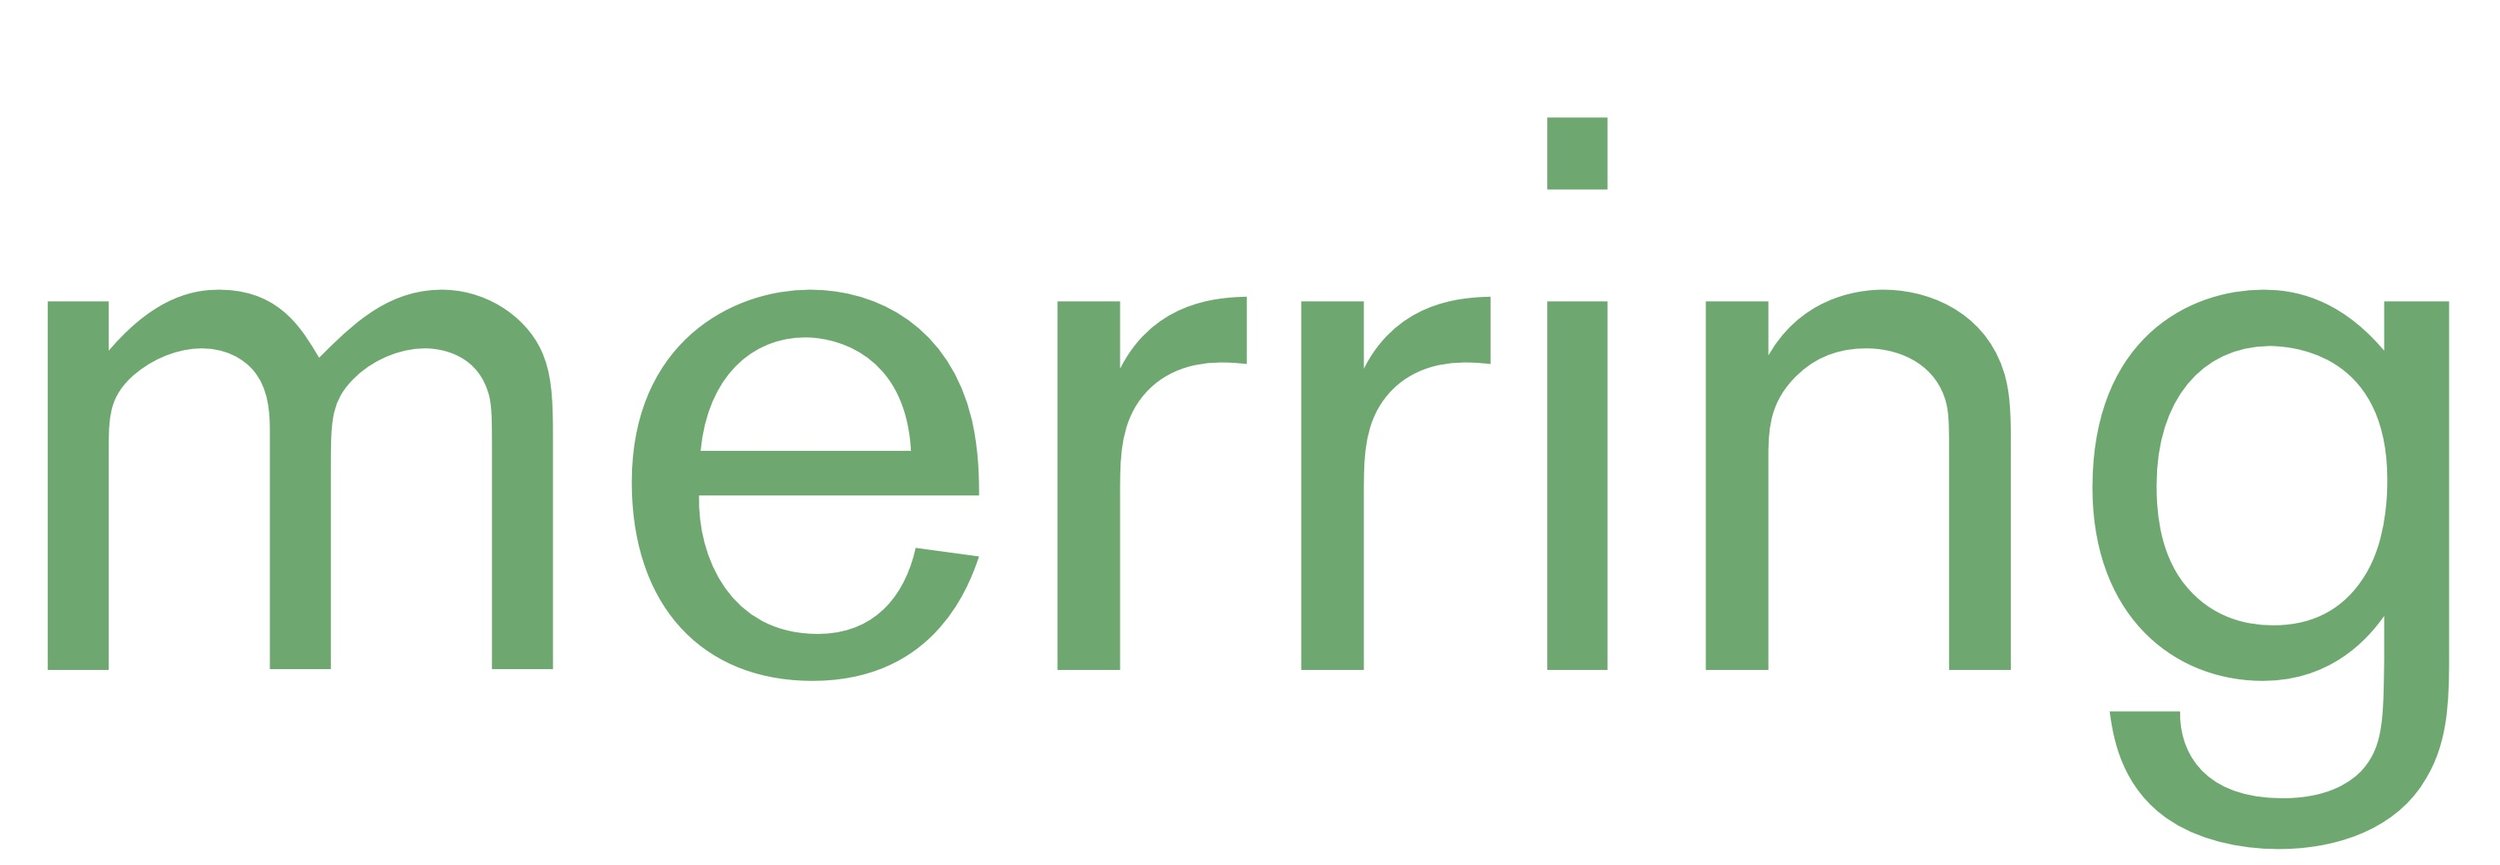 Merring Logo .jpg